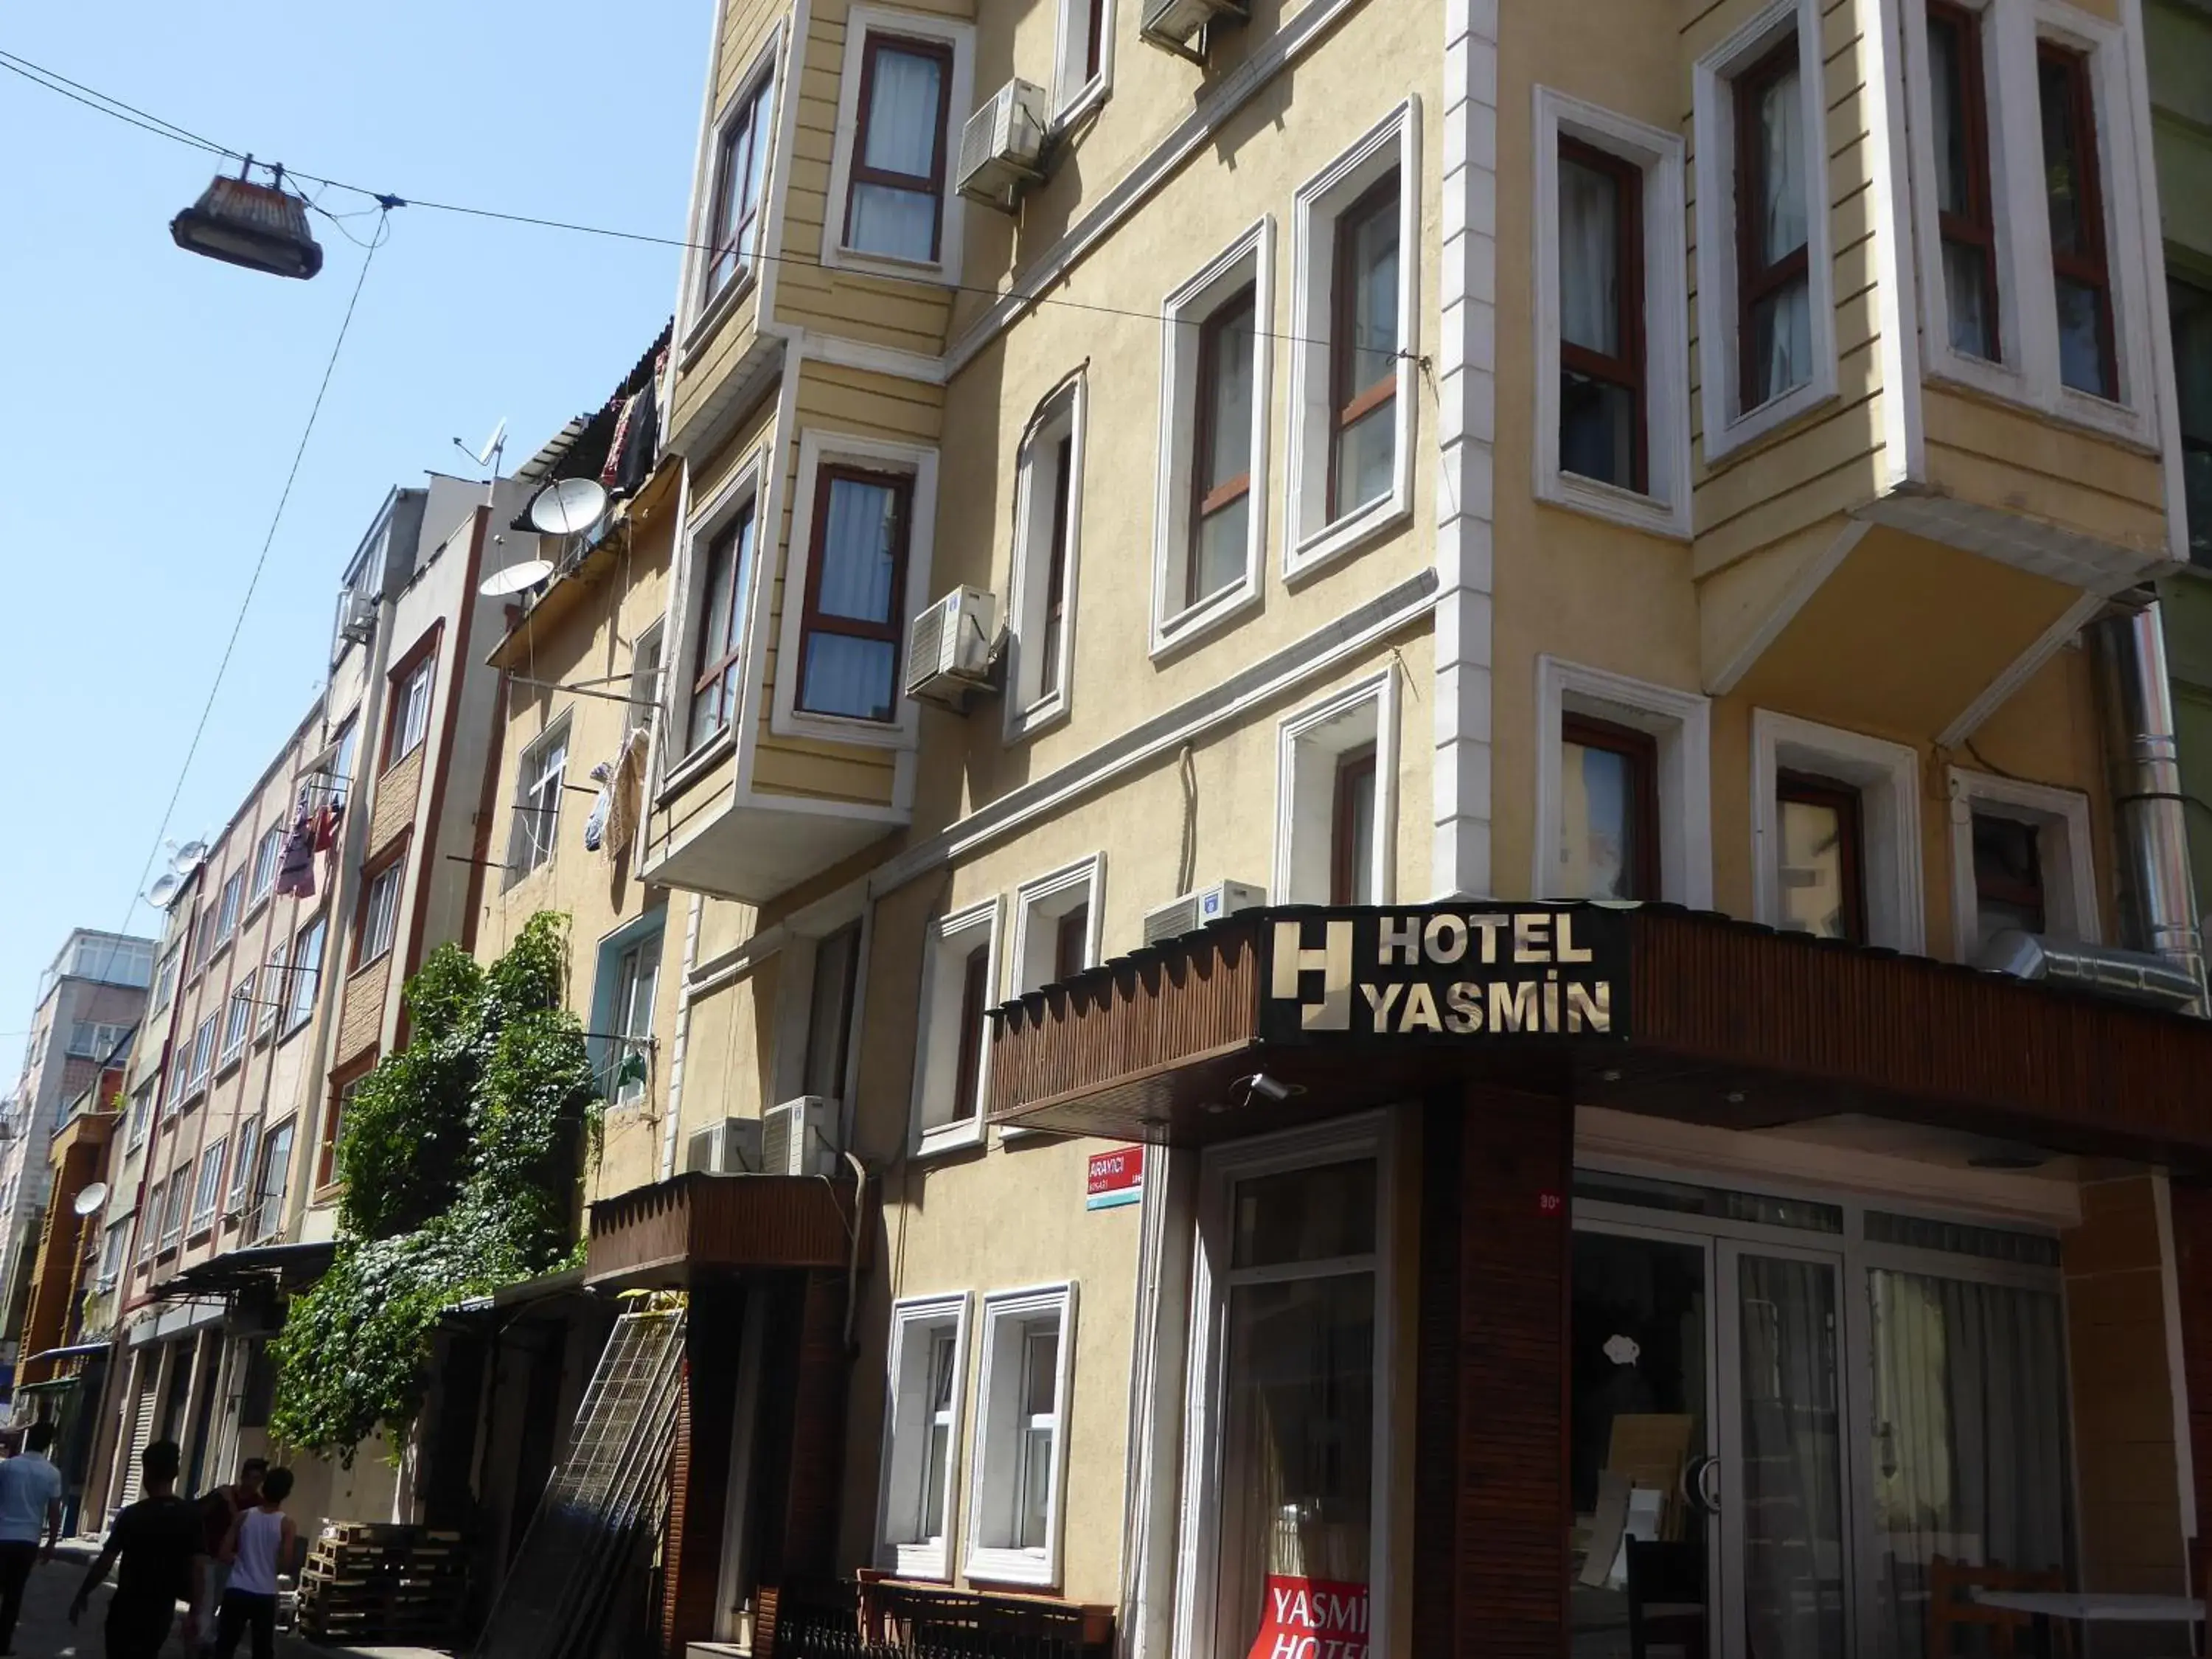 Facade/Entrance in Hotel Yasmin